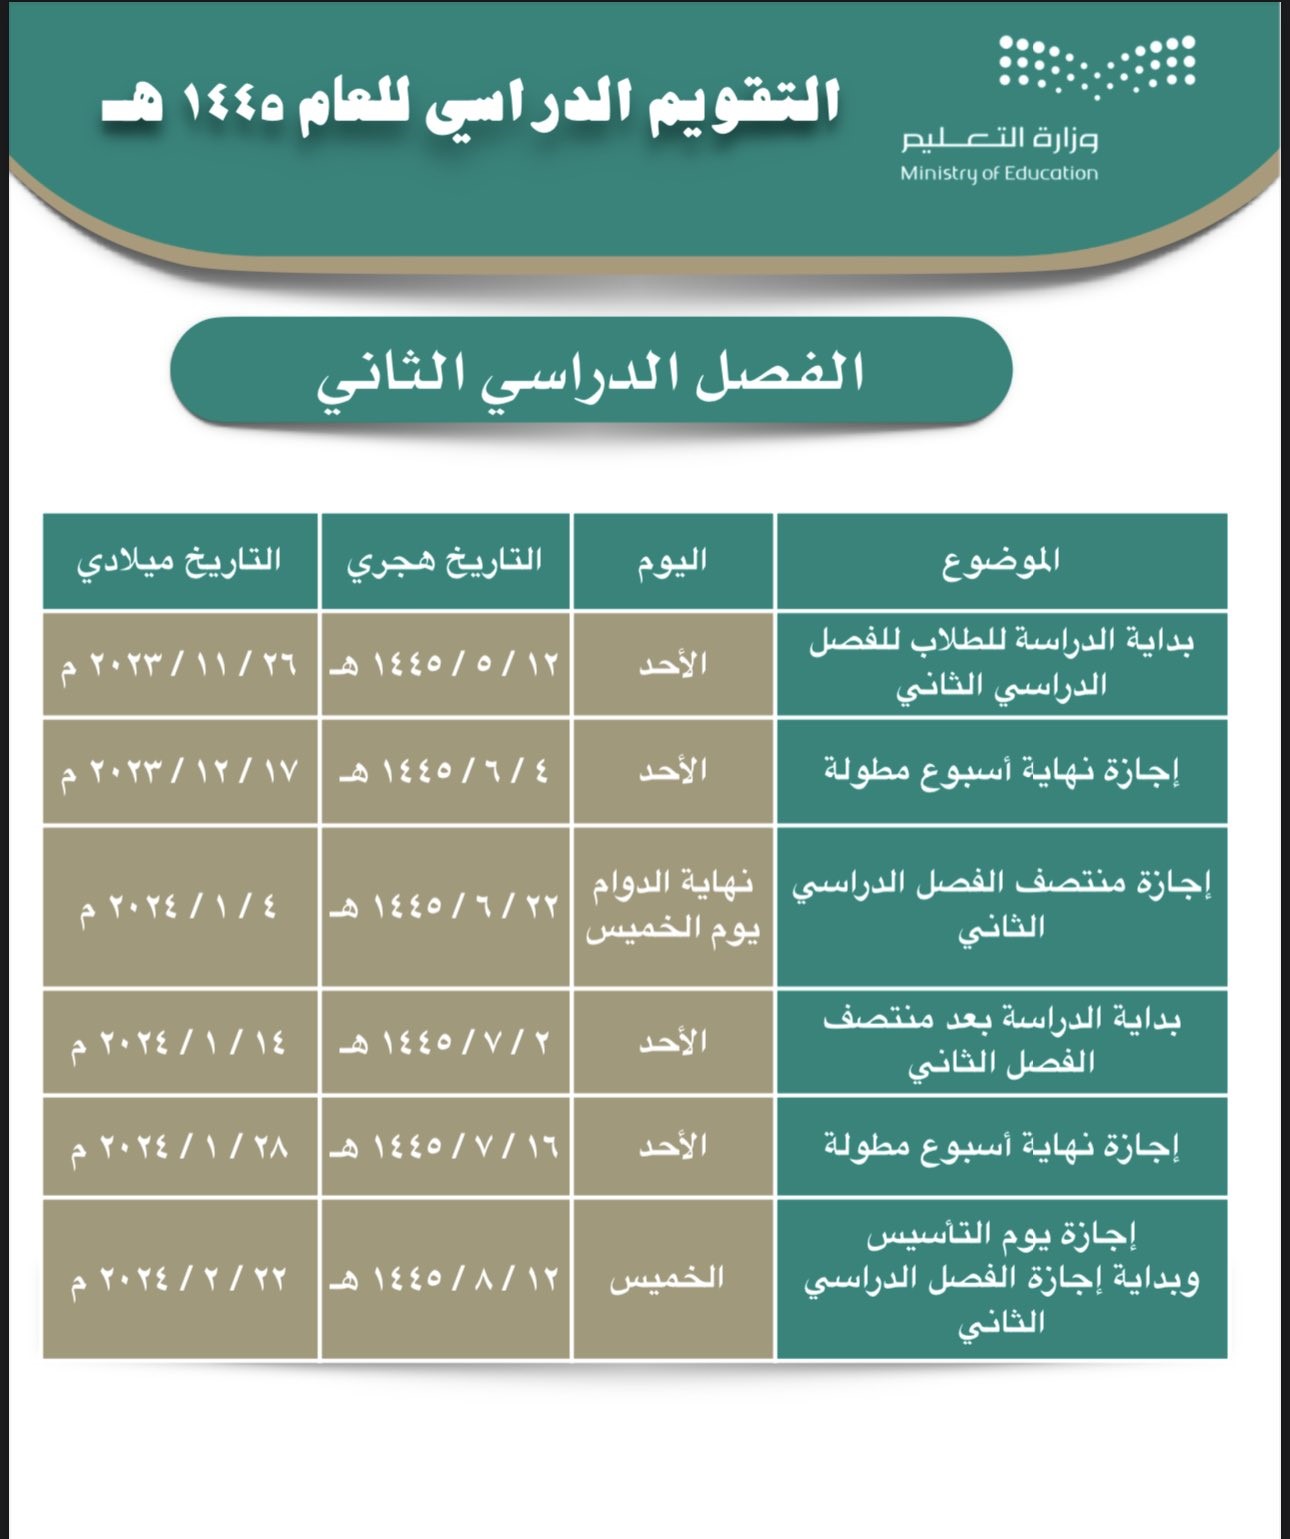 رسميا التعليم السعودي حددت موعد الاختبارات النهائية ١٤٤٥ الفصل الثاني حسب التقويم الدراسي الجديد في السعودية